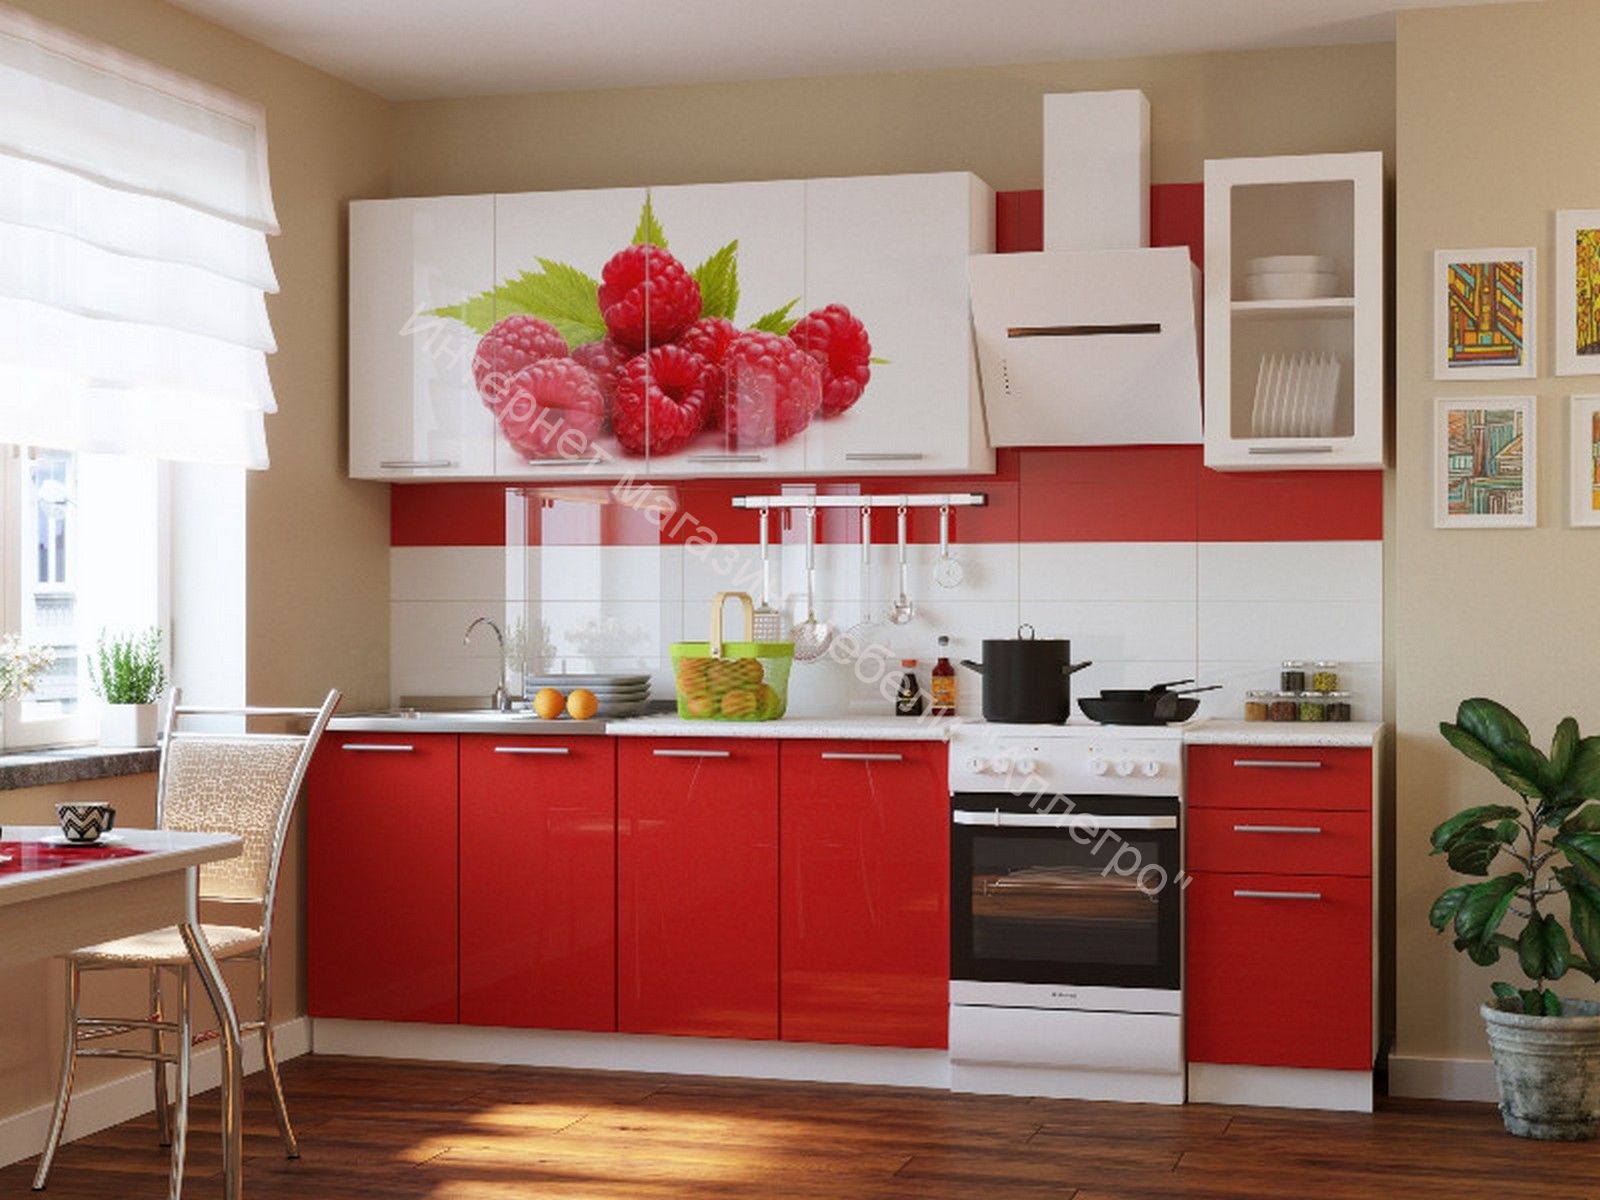 Купить кухонный комплект. Кухня "красные маки" 1,6м. Кухня в Красном цвете. Красивый кухонный гарнитур.